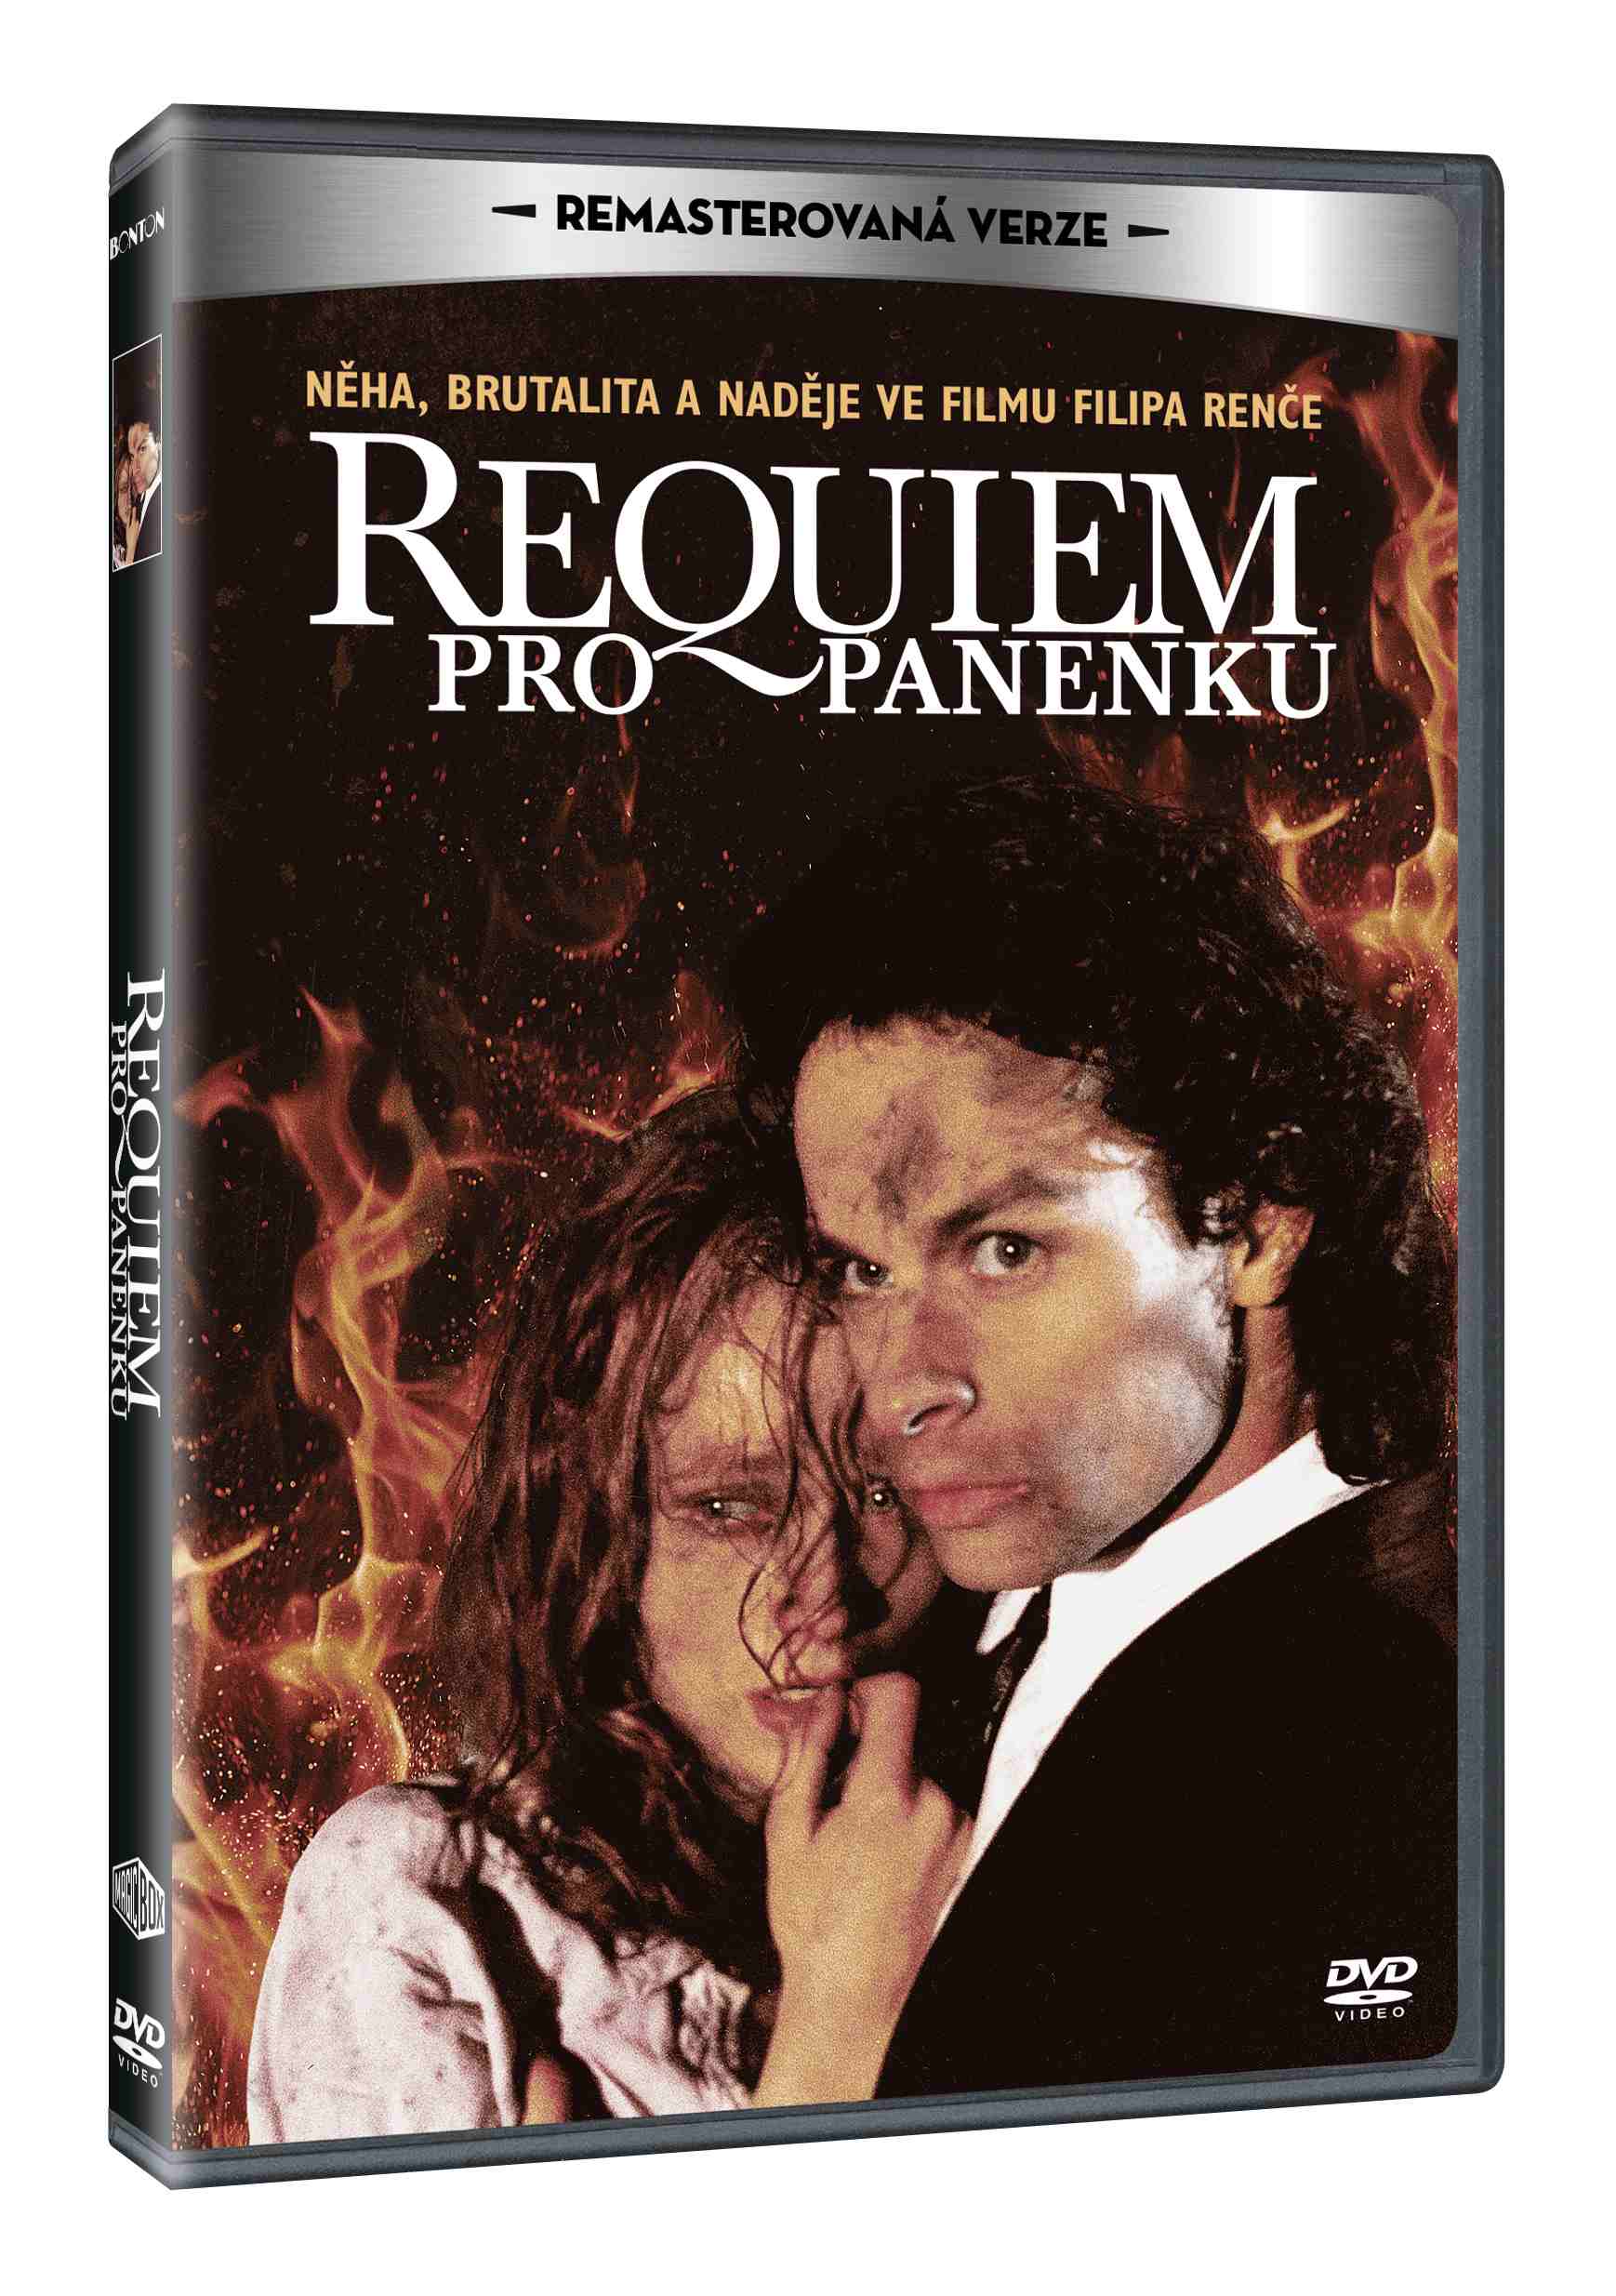 Requiem pro panenku (Remasterovaná verze) - DVD